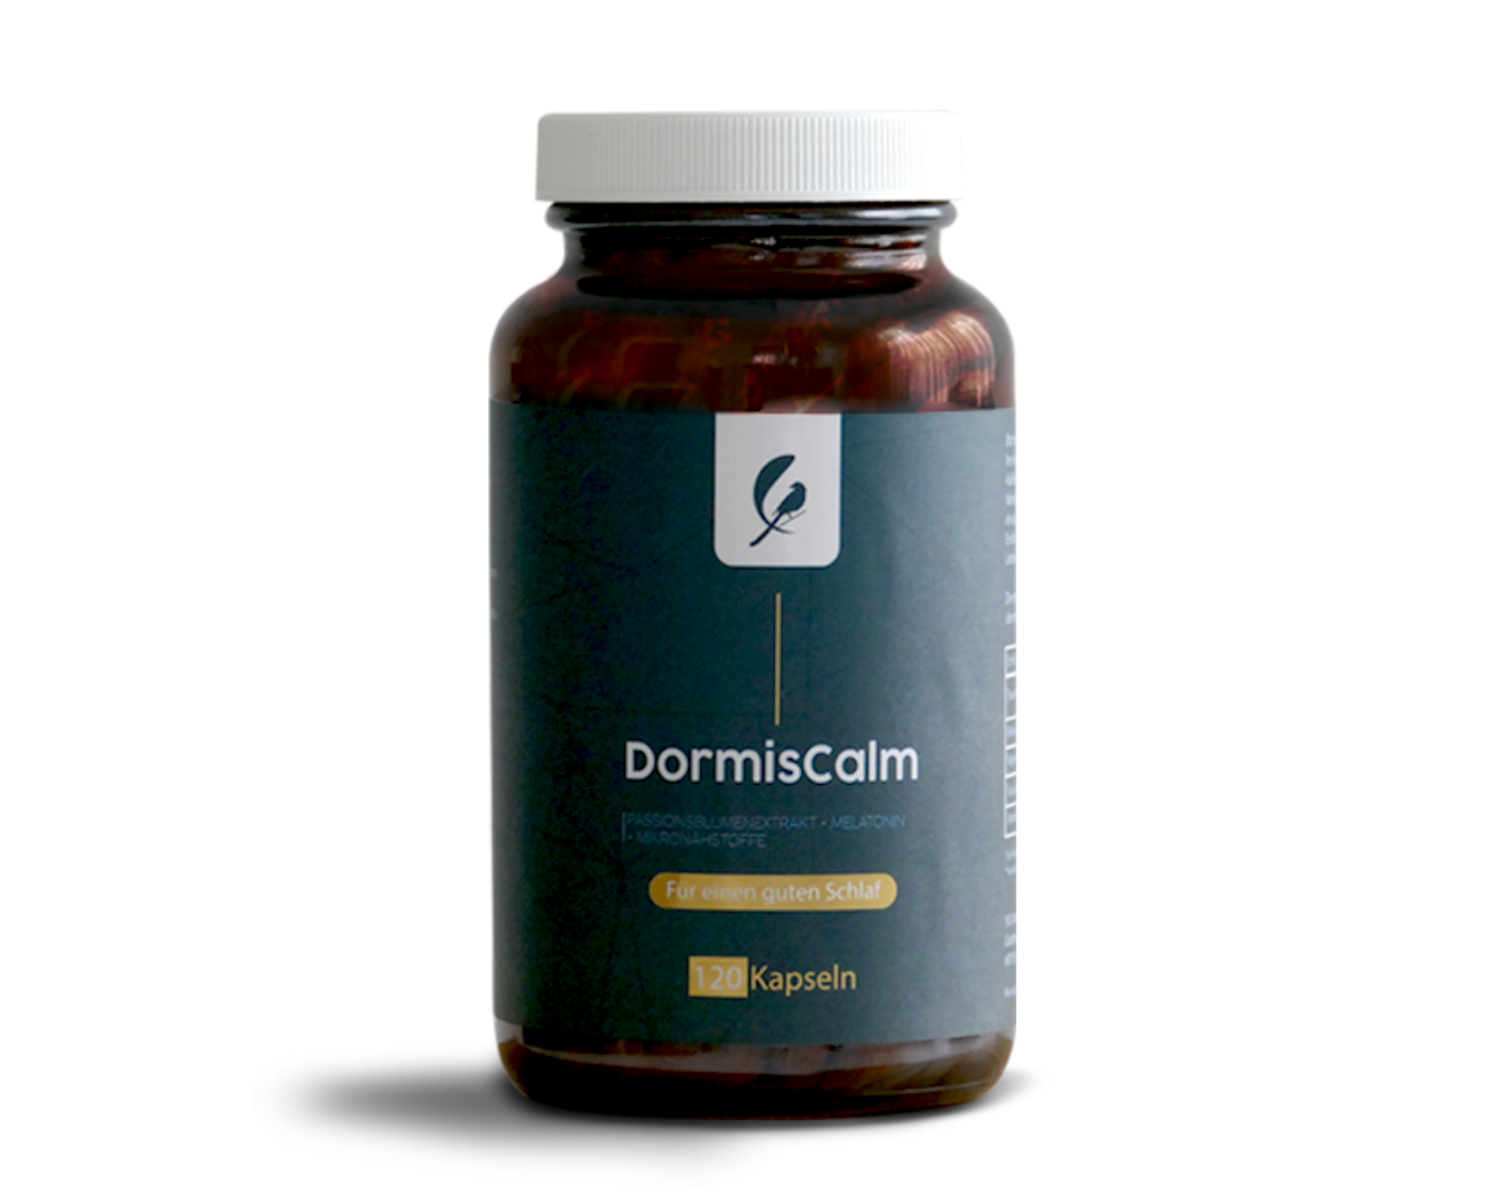 Entdecken Sie DormiCalm – Ihr natürliches Nahrungsergänzungsmittel für einen normalen Ein- und Durchschlaf. Mit Mikronährstoffen aus Vitaminen unterstützt es einen normalen Wach-Schlaf-Rhythmus und fördert erholsamen Schlaf und allgemeines Wohlbefinden.